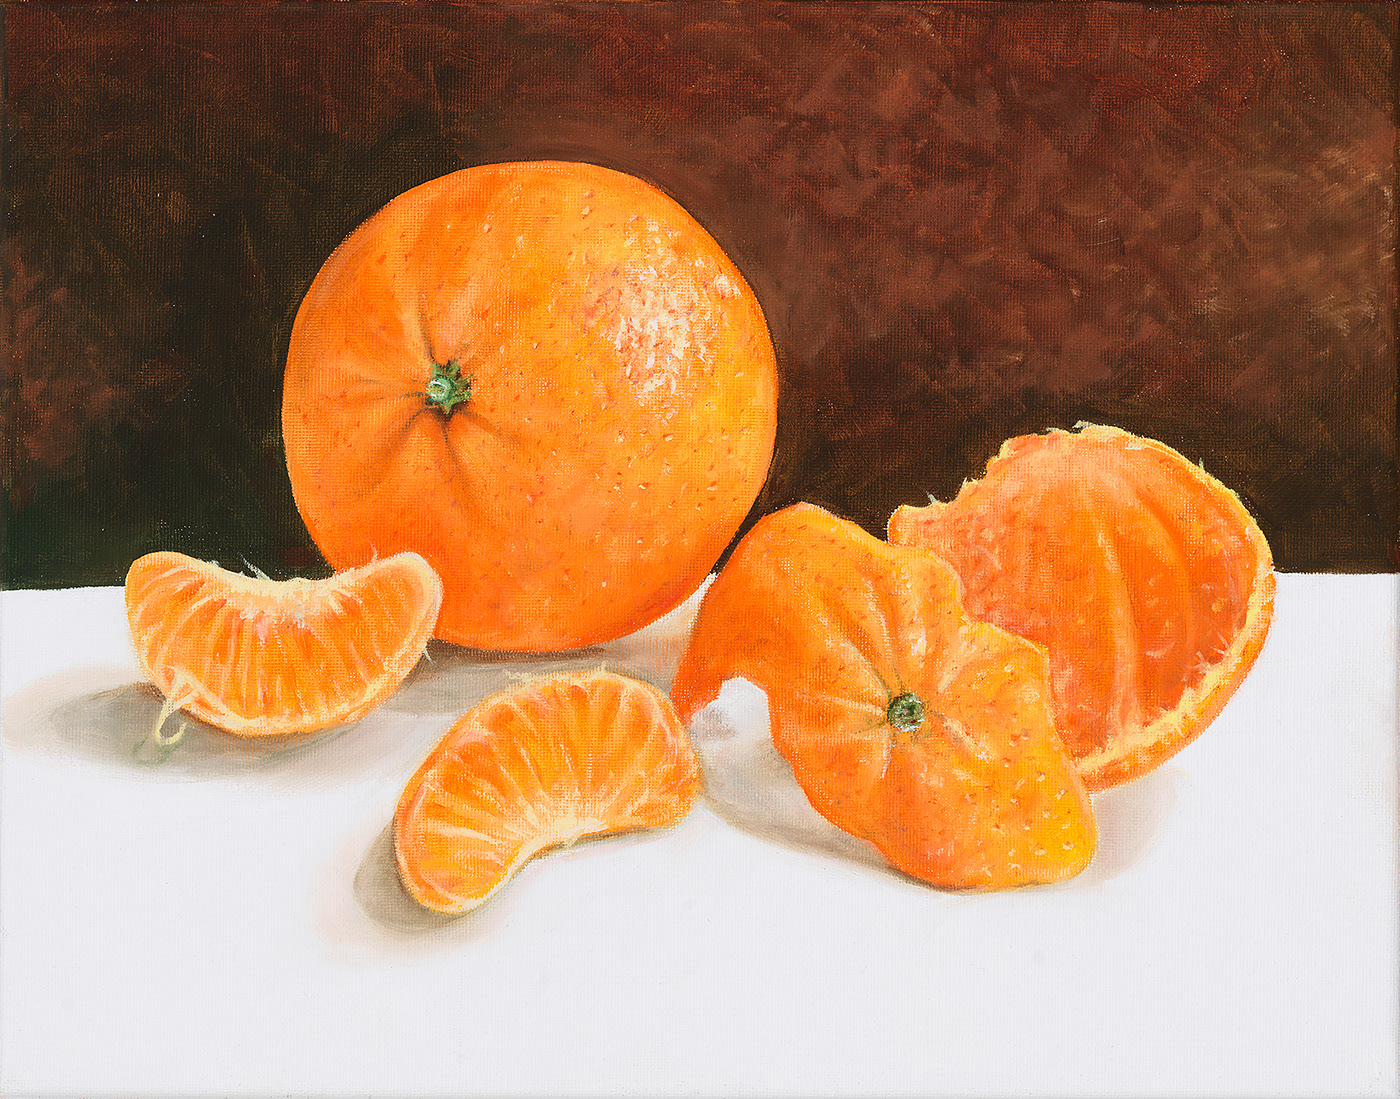 Image may contain: orange, oranges and citrus